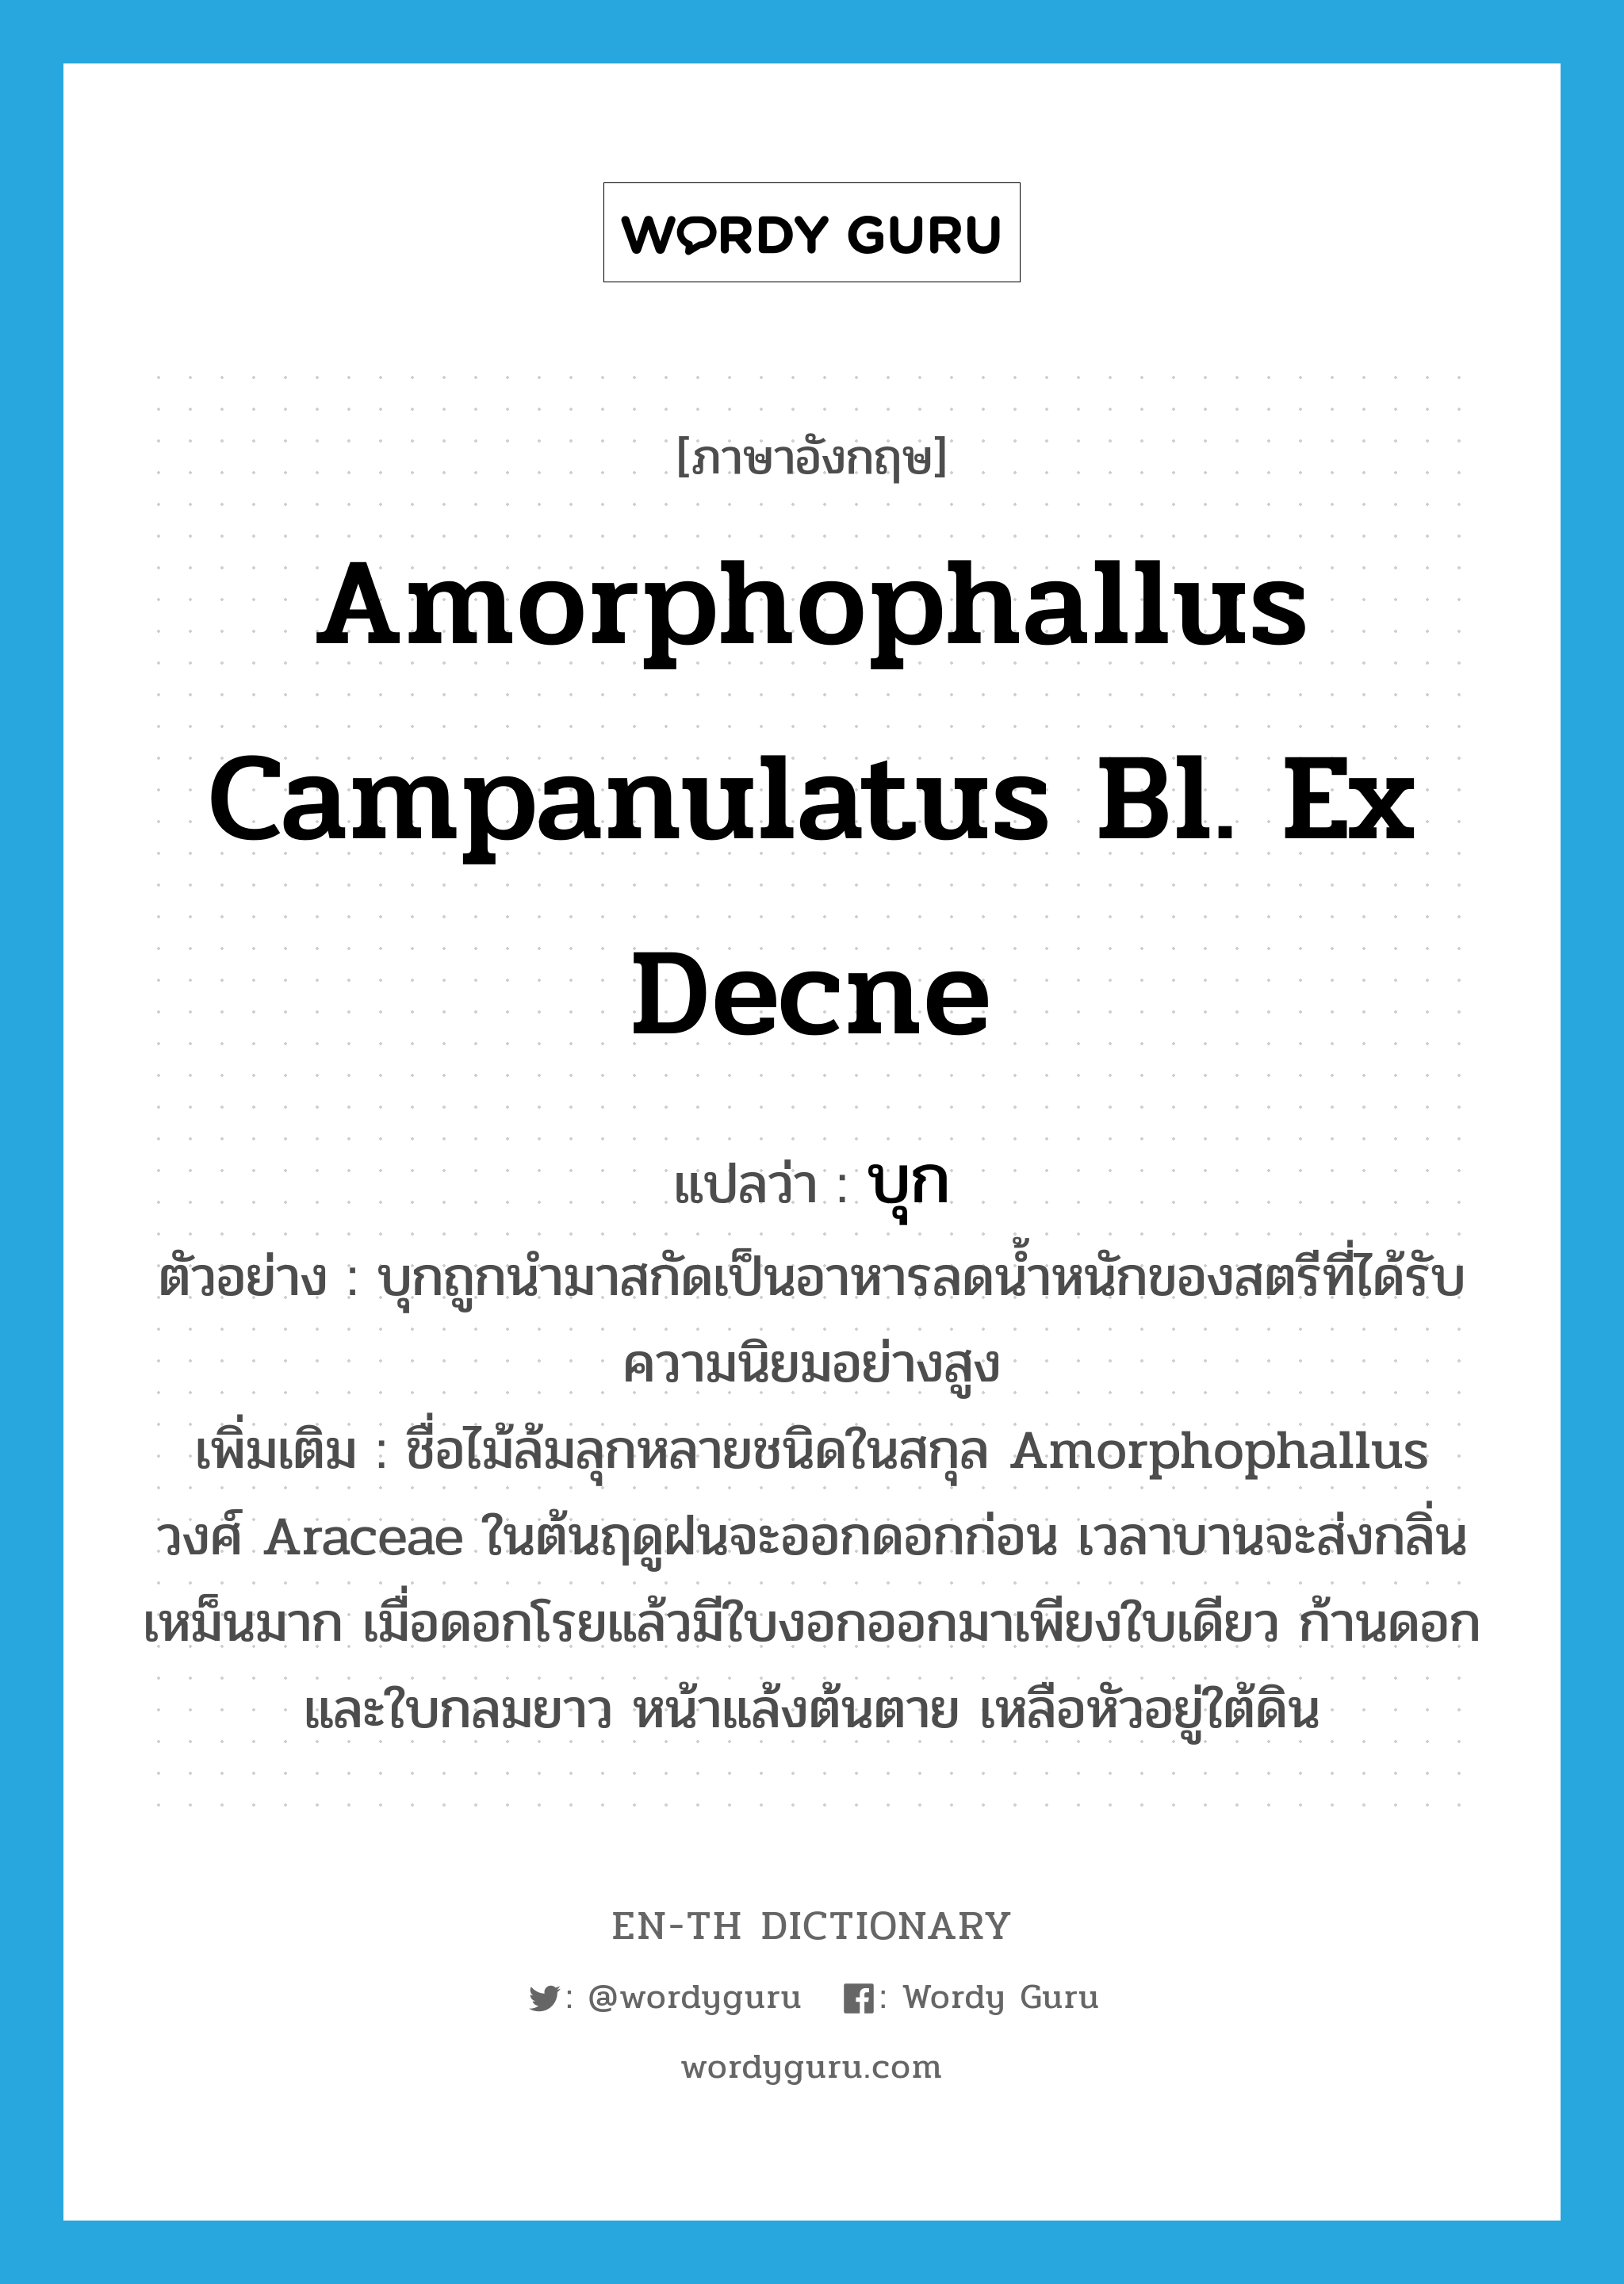 บุก ภาษาอังกฤษ?, คำศัพท์ภาษาอังกฤษ บุก แปลว่า Amorphophallus campanulatus Bl. ex Decne ประเภท N ตัวอย่าง บุกถูกนำมาสกัดเป็นอาหารลดน้ำหนักของสตรีที่ได้รับความนิยมอย่างสูง เพิ่มเติม ชื่อไม้ล้มลุกหลายชนิดในสกุล Amorphophallus วงศ์ Araceae ในต้นฤดูฝนจะออกดอกก่อน เวลาบานจะส่งกลิ่นเหม็นมาก เมื่อดอกโรยแล้วมีใบงอกออกมาเพียงใบเดียว ก้านดอกและใบกลมยาว หน้าแล้งต้นตาย เหลือหัวอยู่ใต้ดิน หมวด N